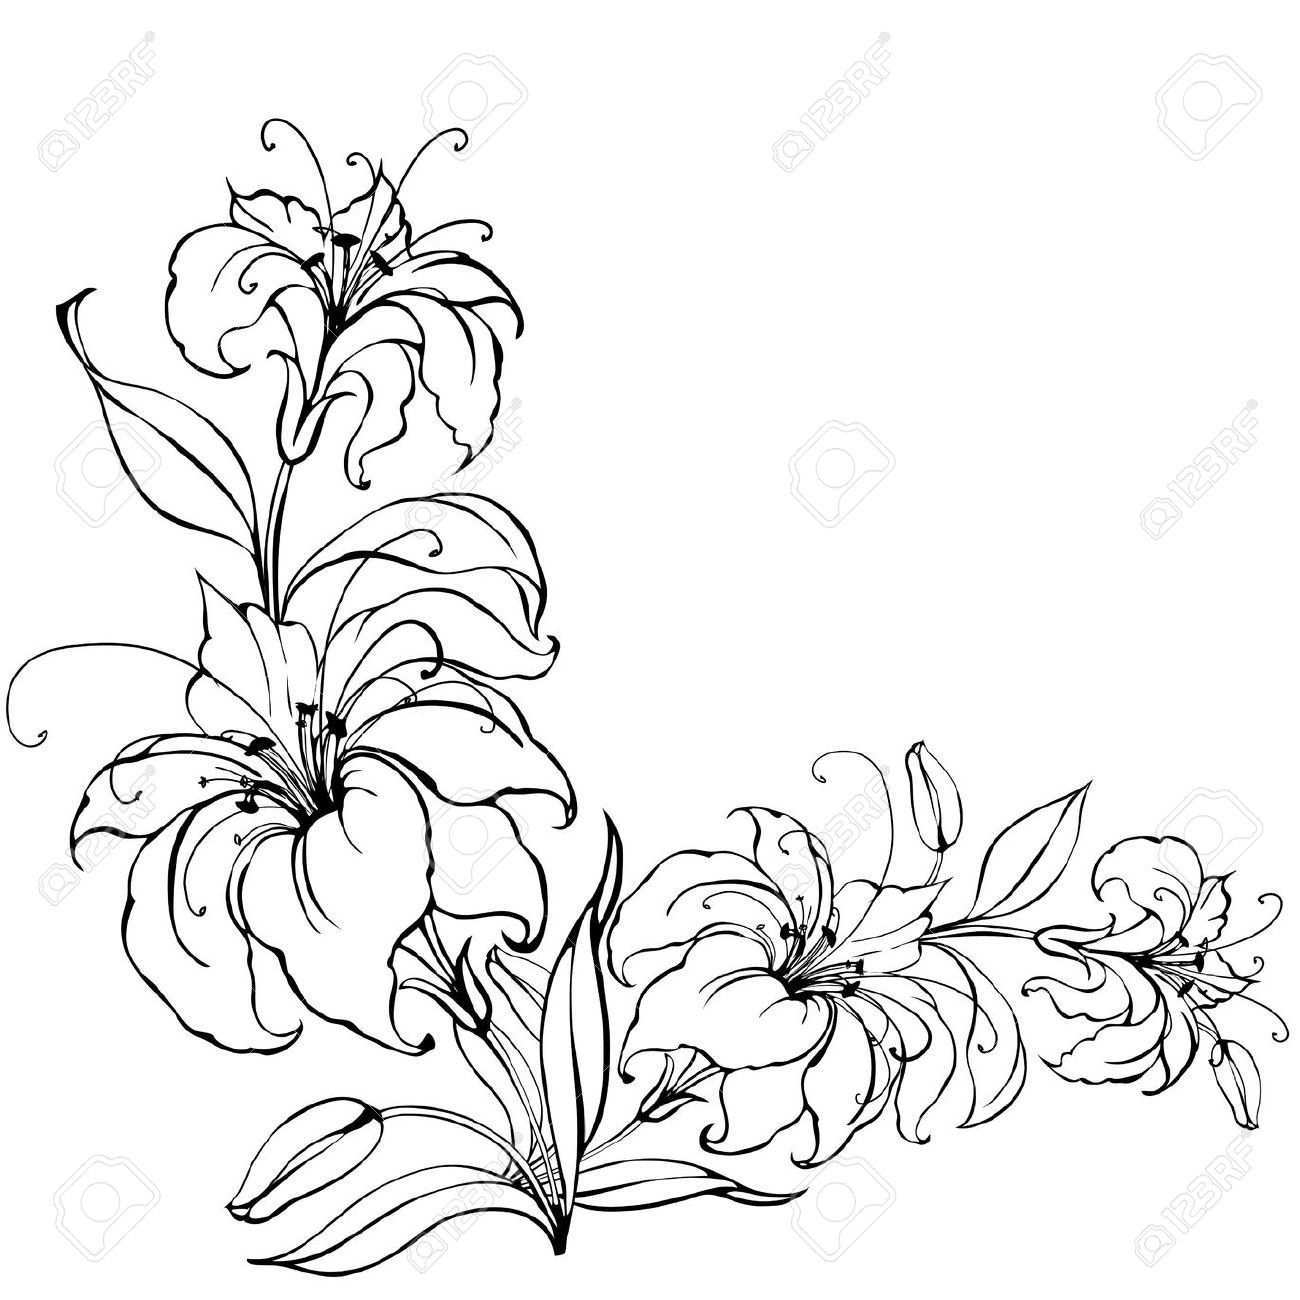 Lily Flower Blumenzeichnung Lilien Blumen Scherenschnitt Vorlagen